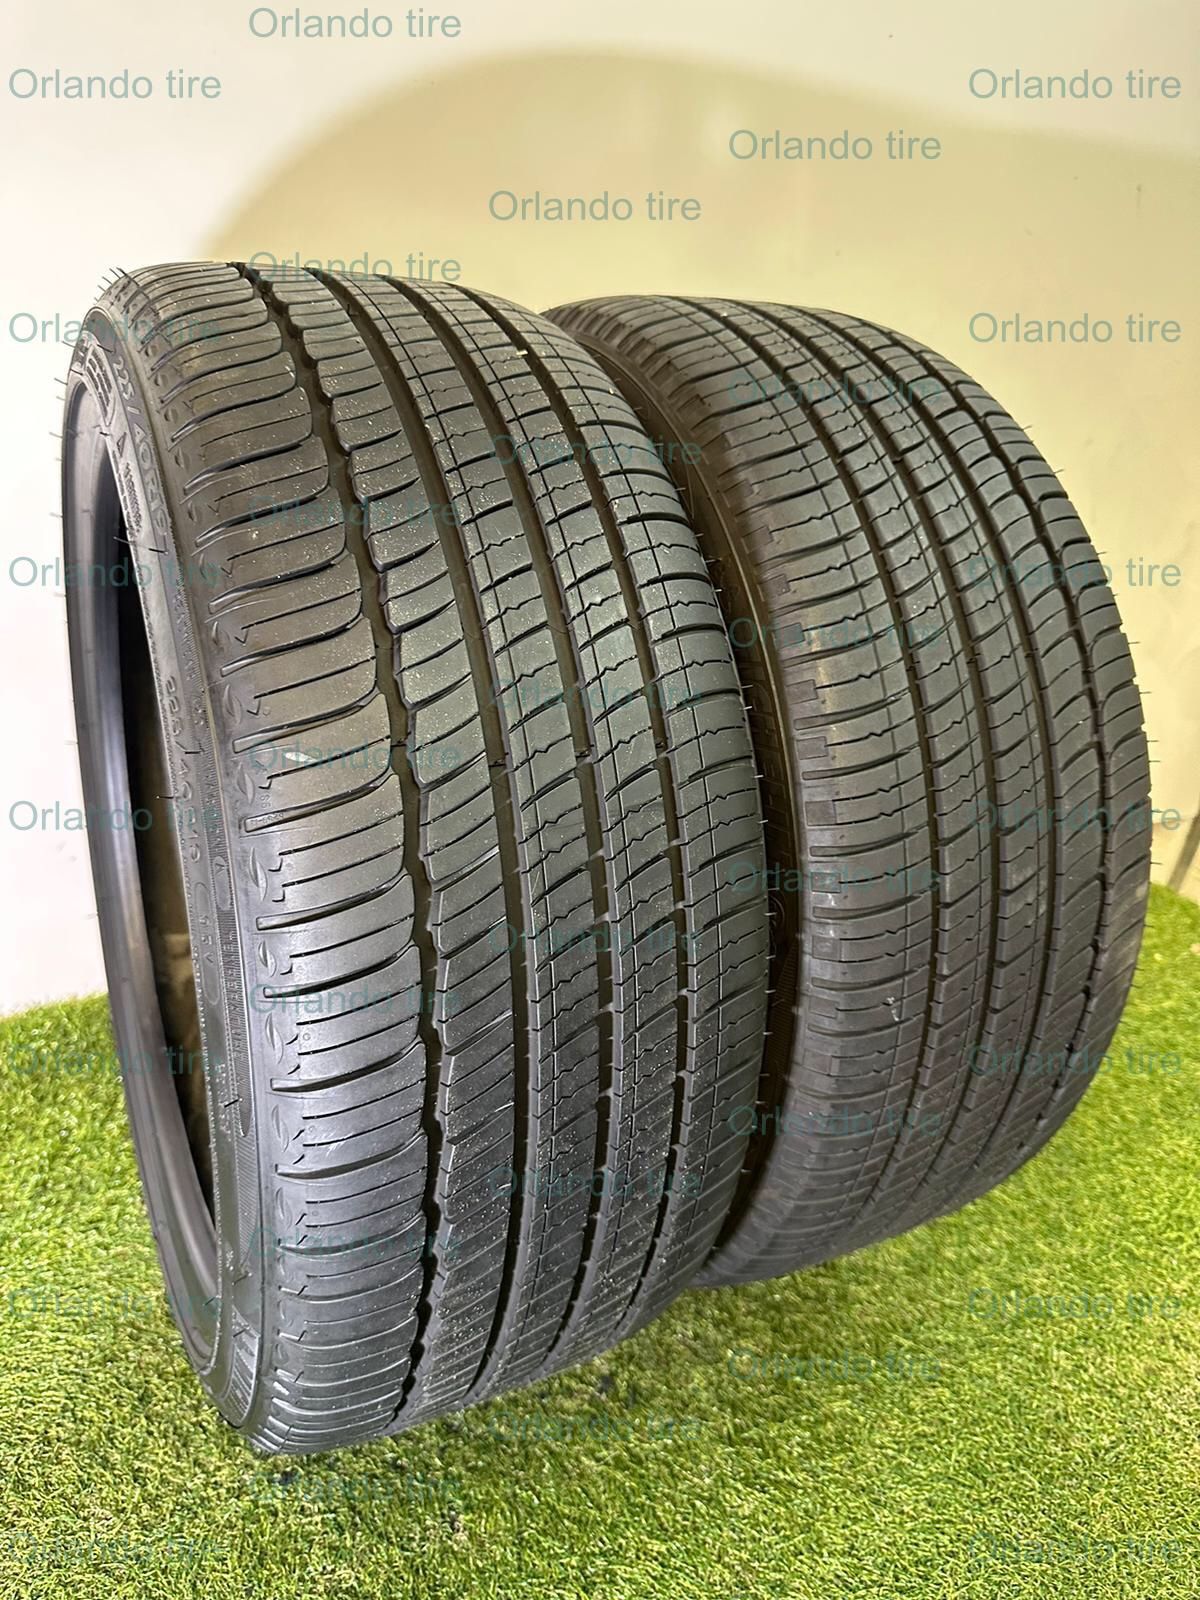 P102  225 40 19 93V  Michelin Primacy Mxm4 ZP  2 Used Tires 90% Life 